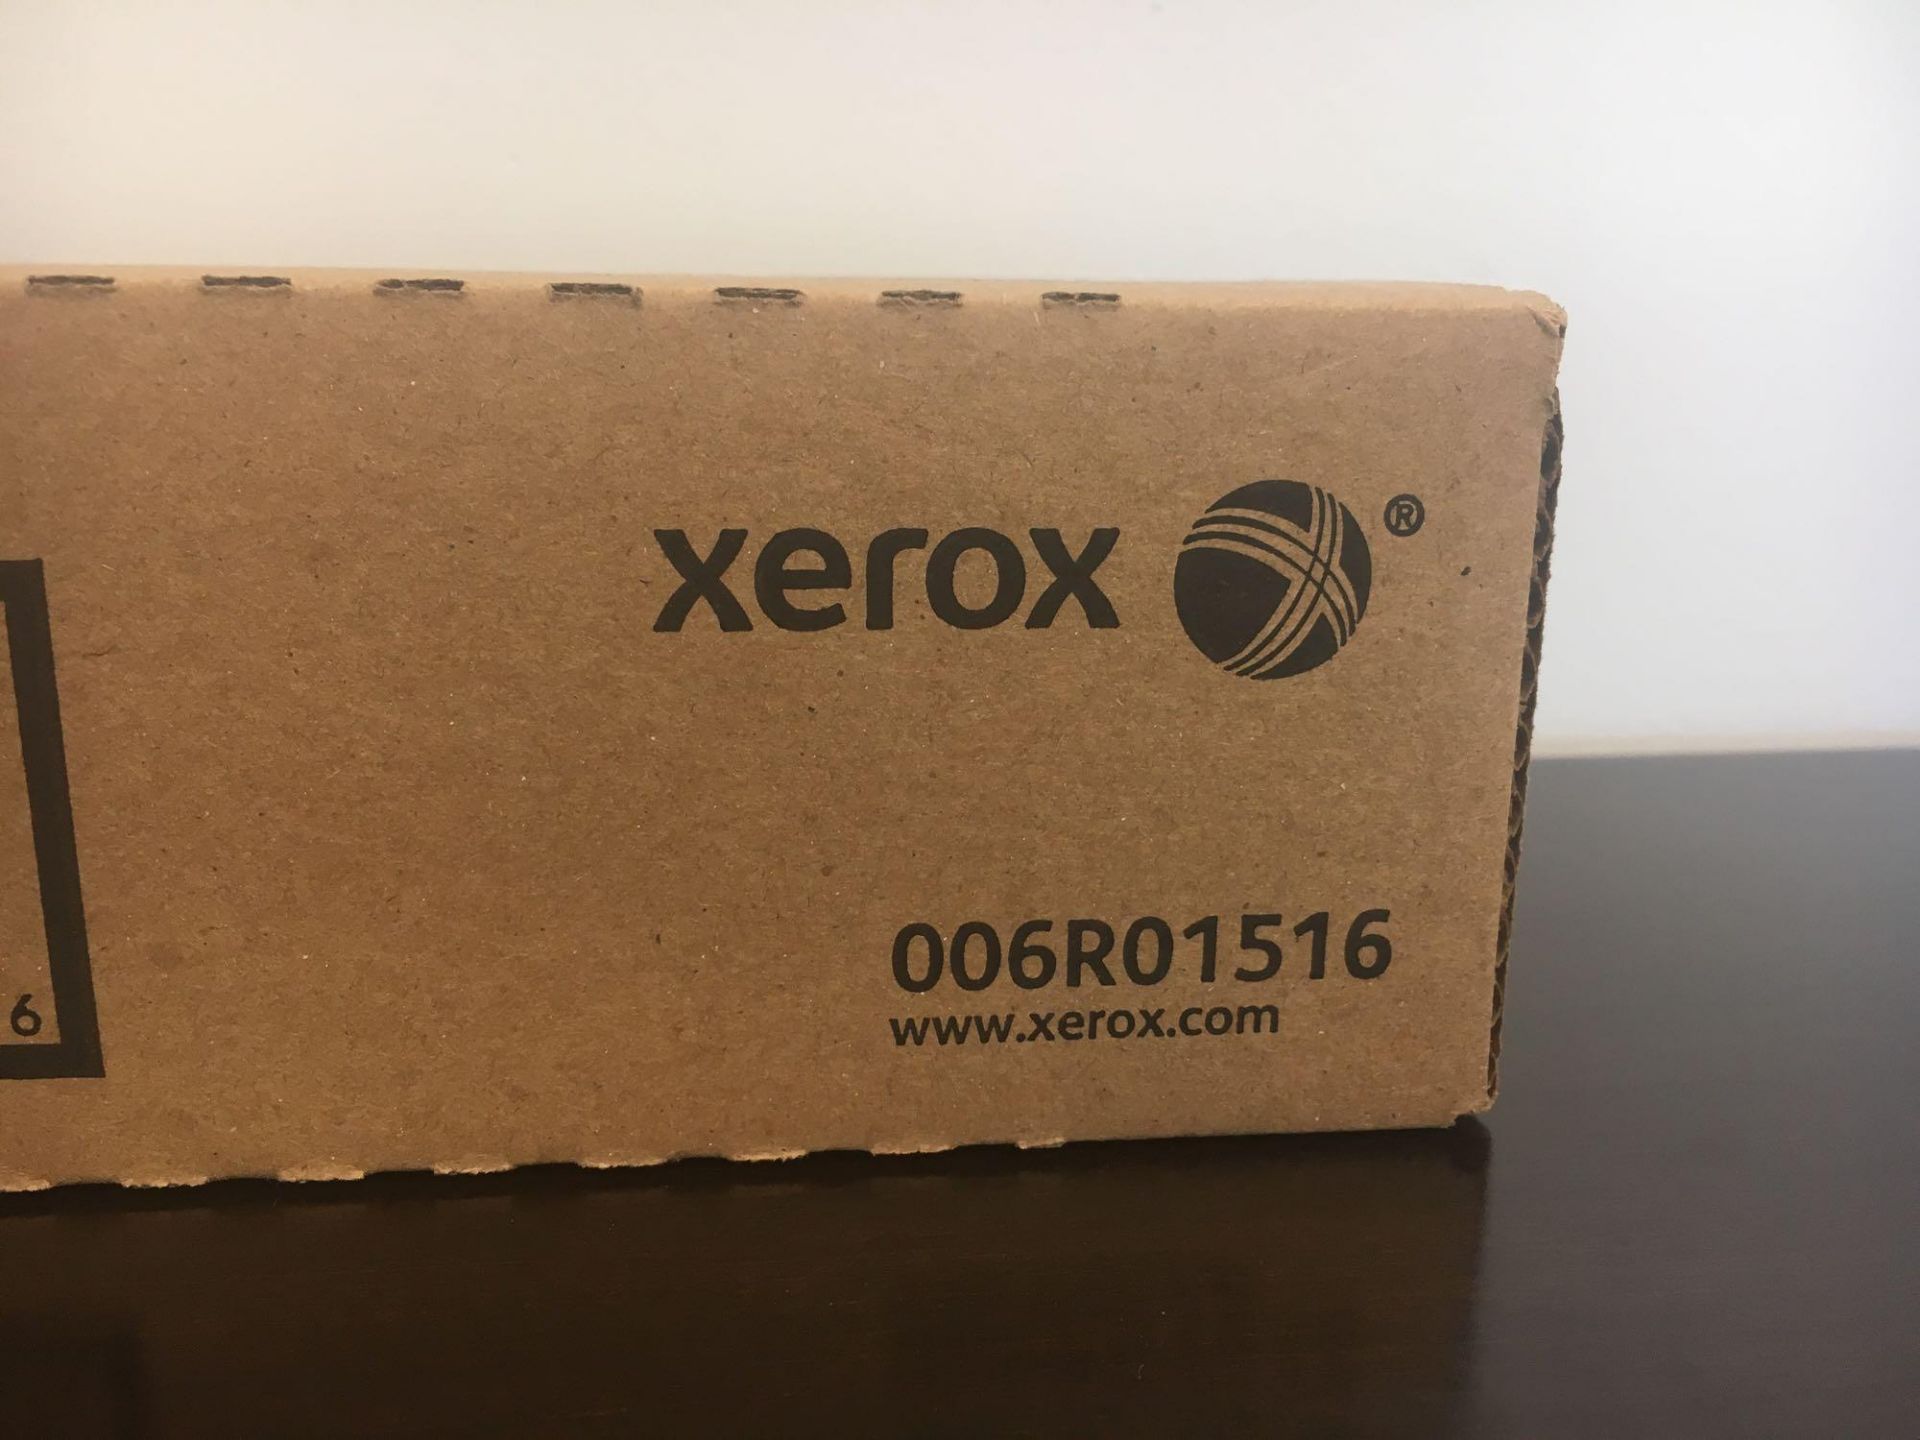 Xerox Cyan Toner 006R01516 - Image 2 of 2